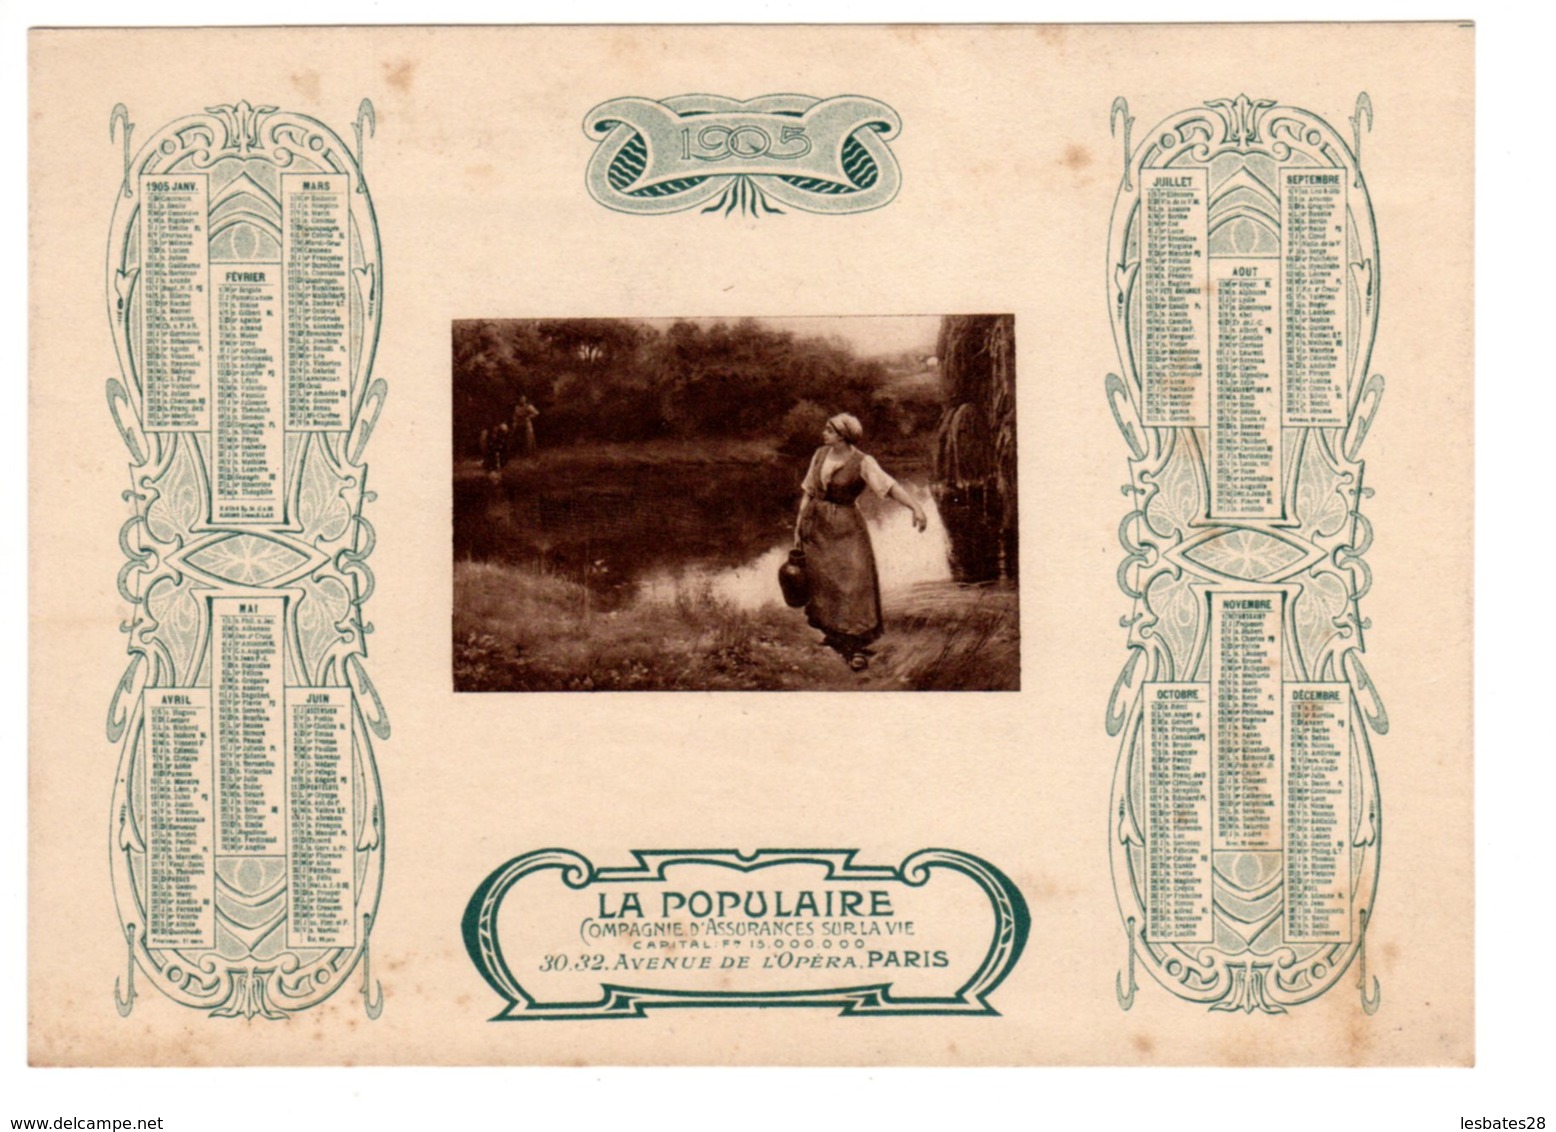 Almanach-CALENDRIER 1905 LA POPULAIRE Compagnie D'Assurance Sur La Vie Publicité Allegorie Porteuse D'Eau FEVR 2019 ABL4 - Grand Format : 1901-20